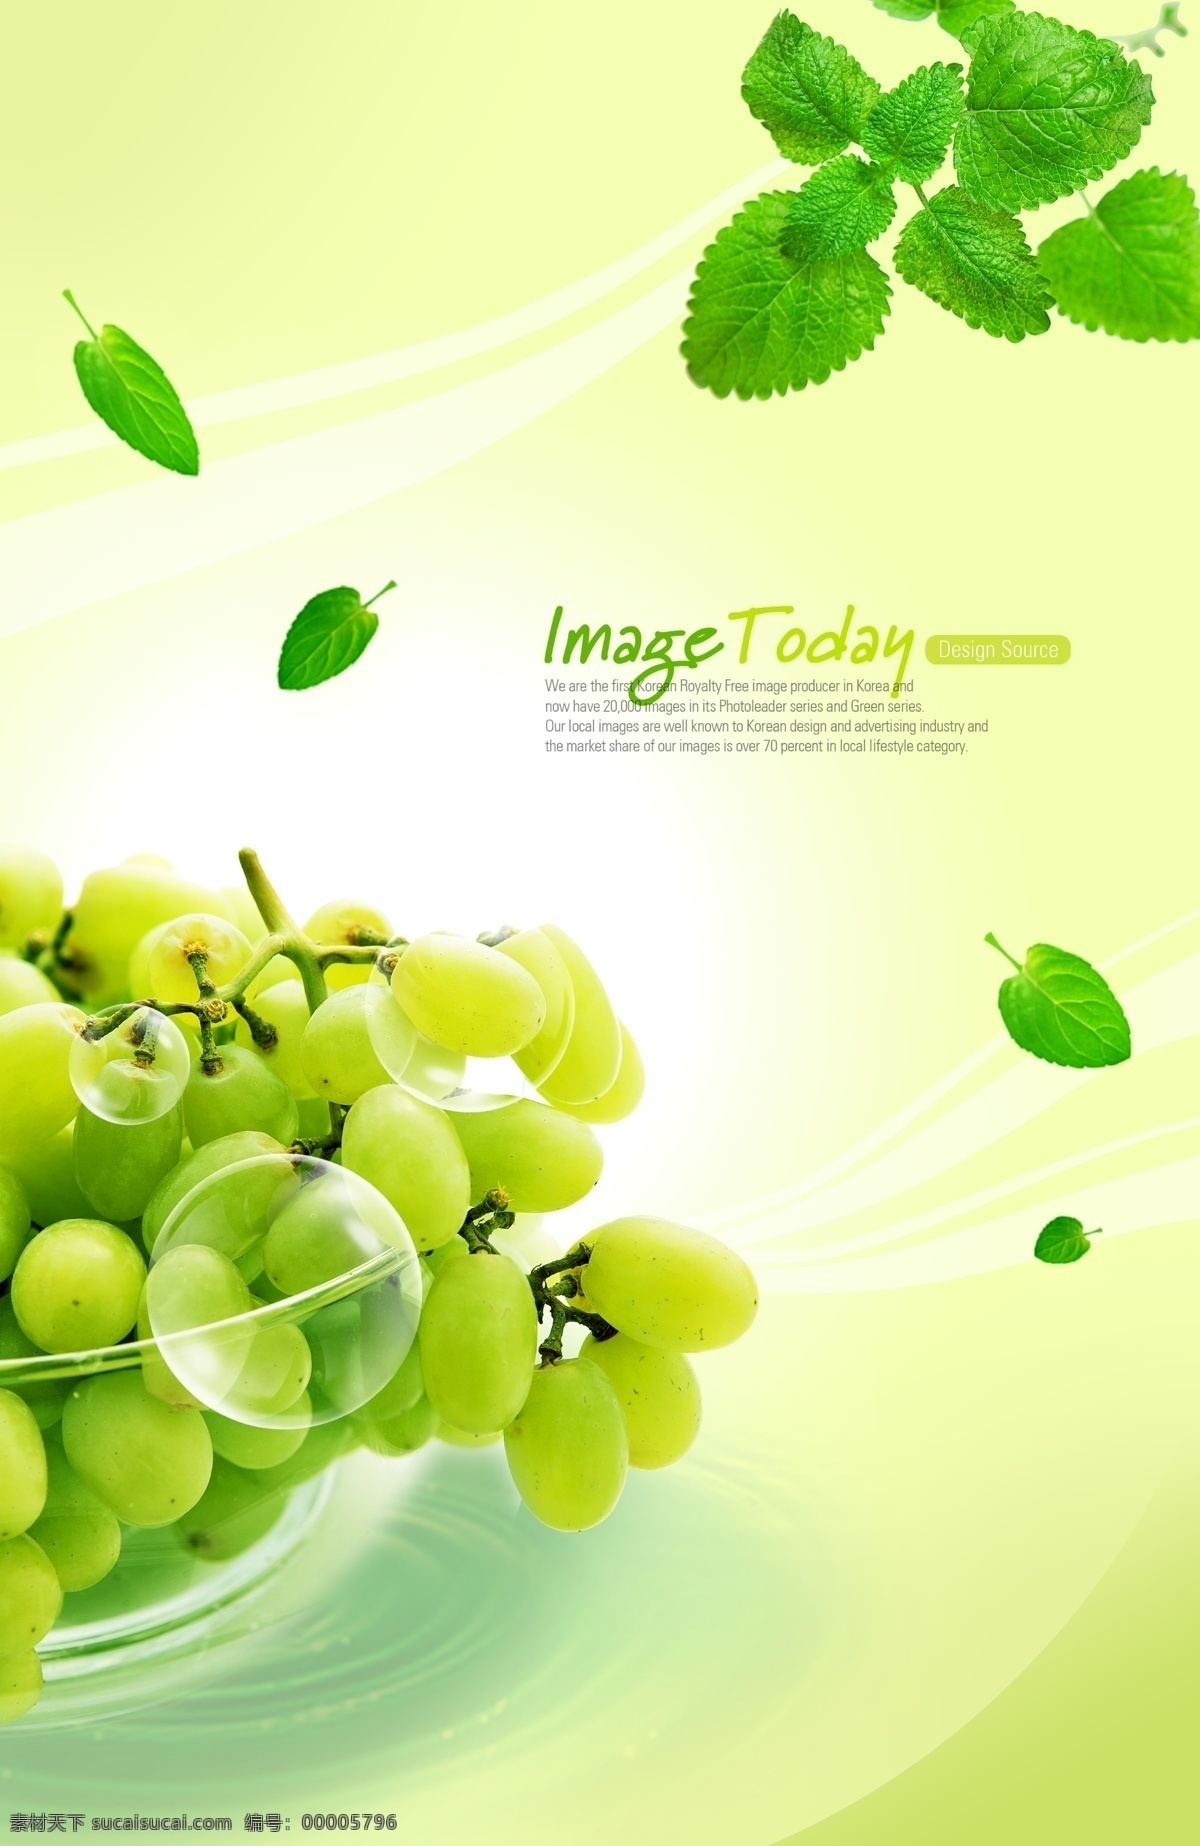 水果 设计素材 波纹 绿色 生物世界 树叶 提子 水果设计素材 水果模板下载 psd源文件